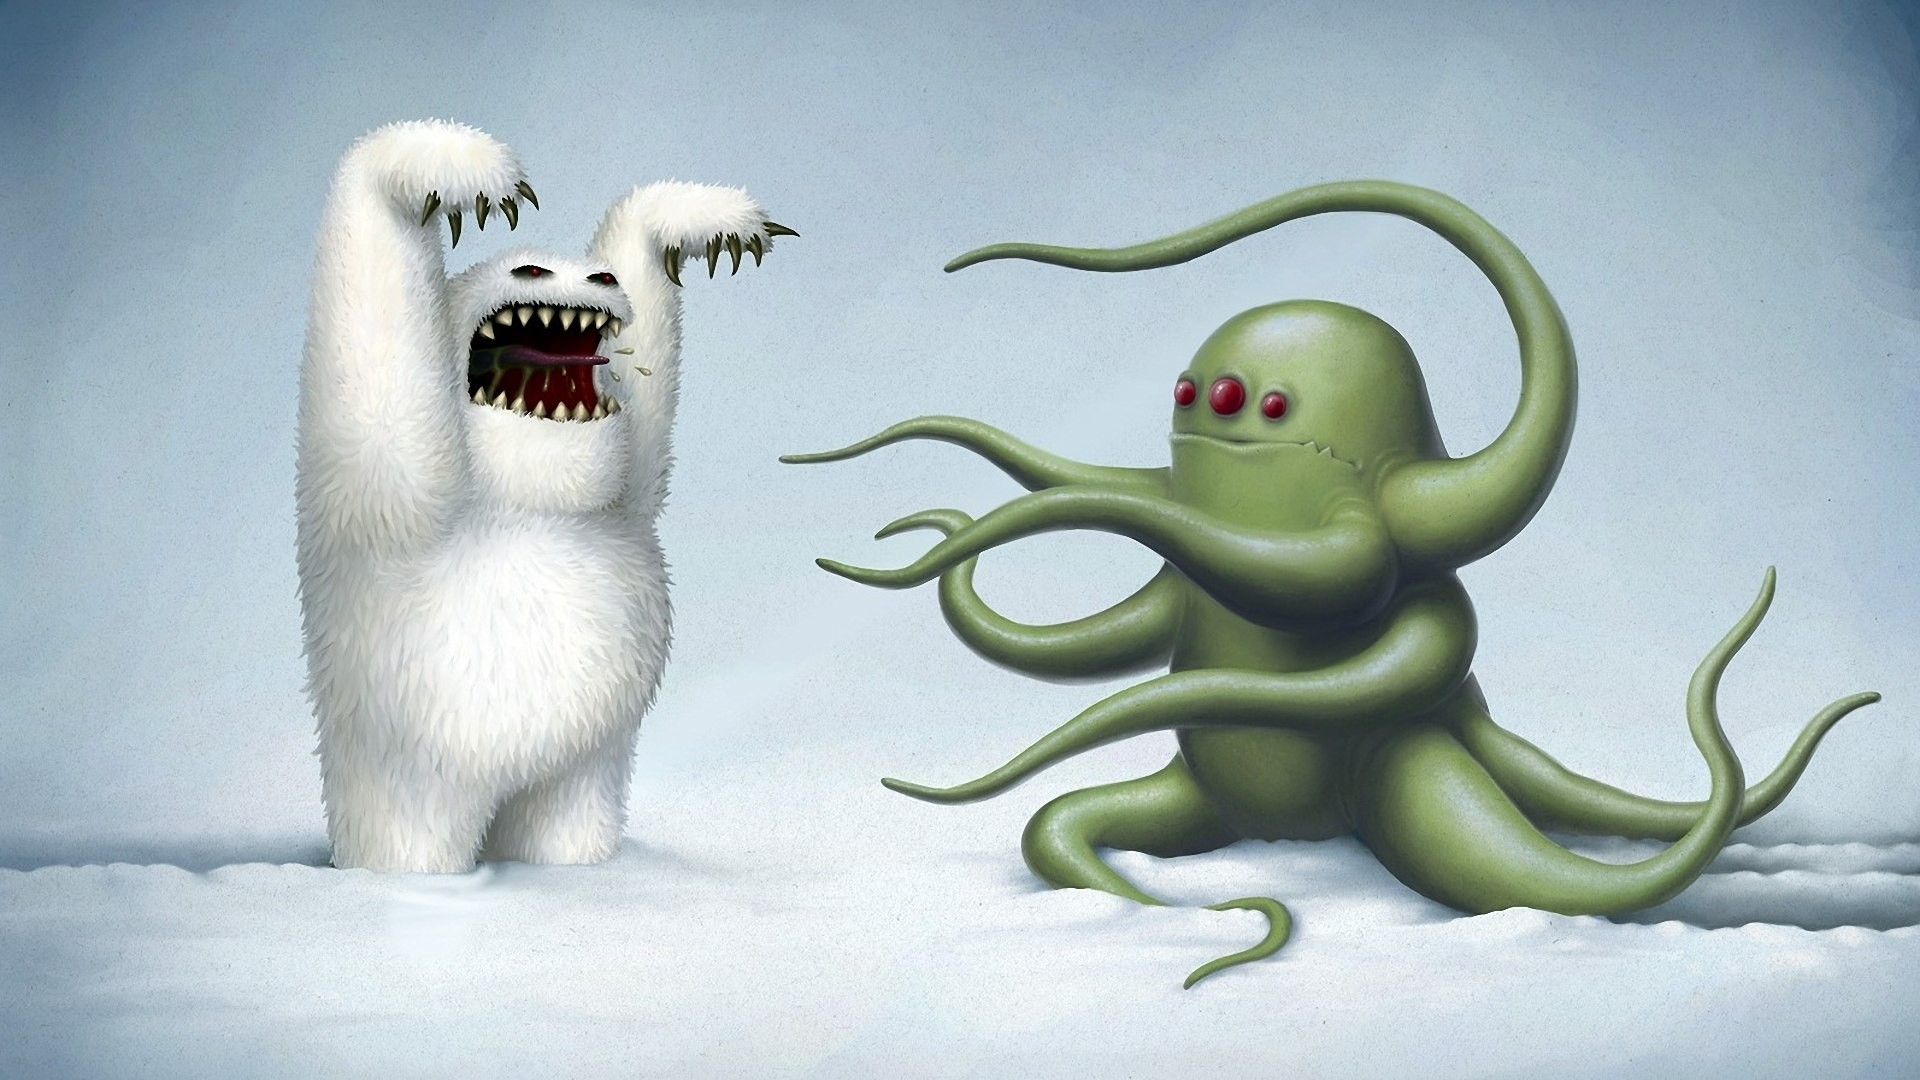 Digital Art Creature Polar Bears Roar Fangs Fantasy Art Snow Tentacles 1920x1080